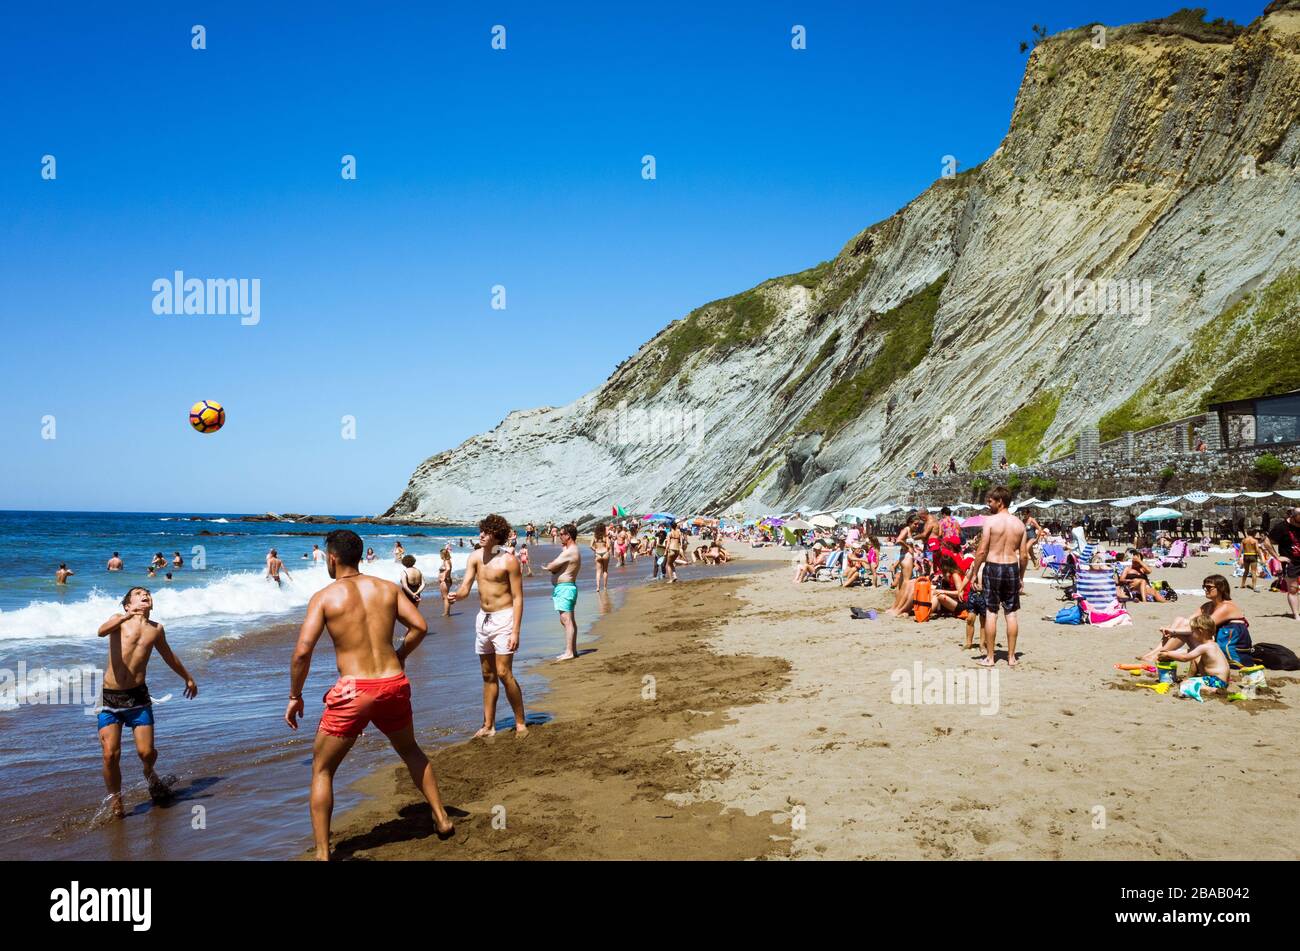 Zumaia, Gipuzkoa, Baskenland, Spanien - 15. Juli 2019: Strandgänger spielen am Ufer am Itzurun Beach Ball. Stockfoto